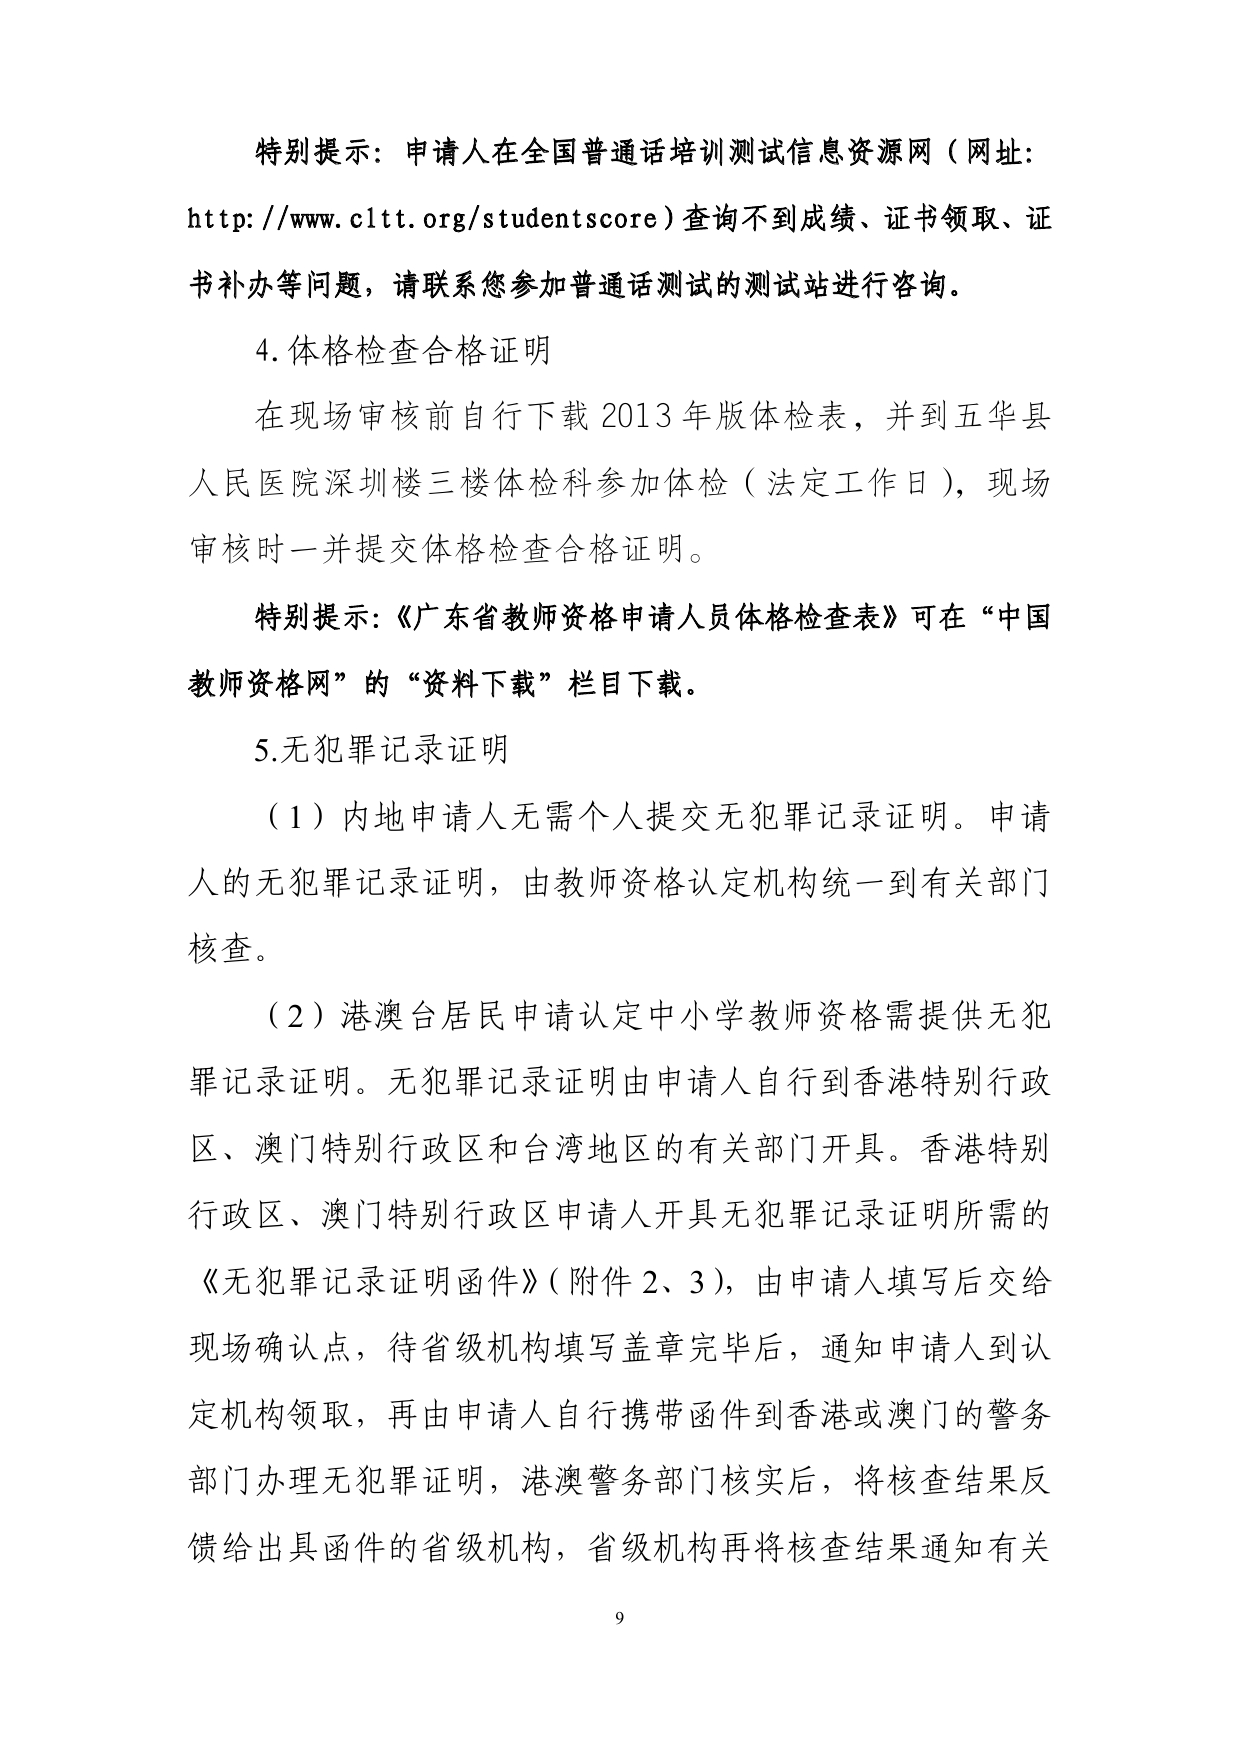 五华县2020年上半年中小学教师资格认定公告0008.jpg